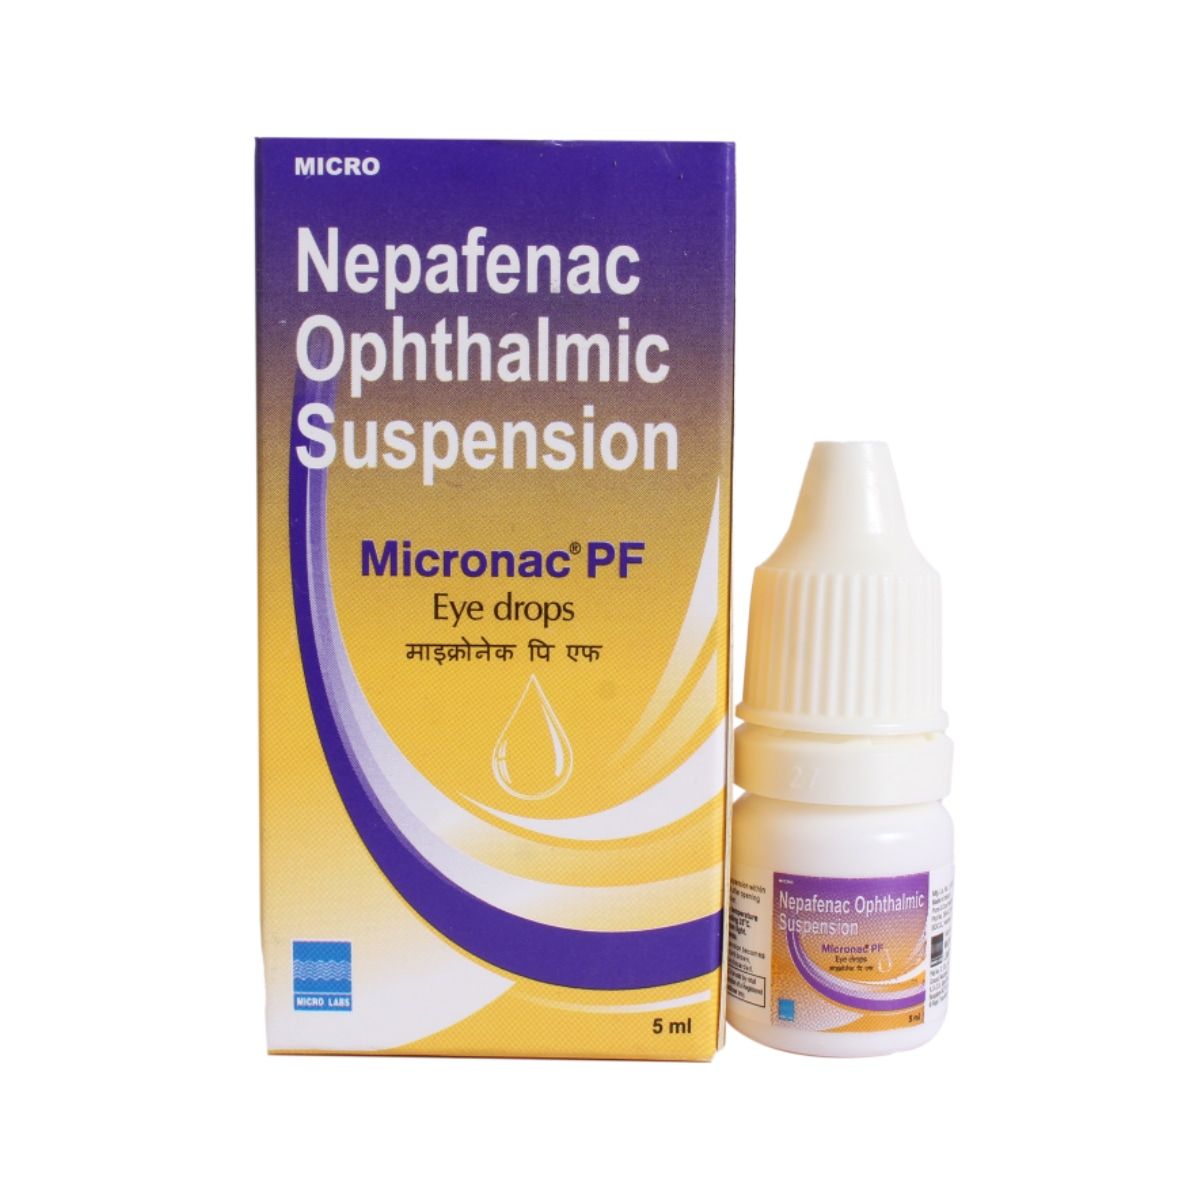 Buy Micronac PF Eye Drops 5 ml Online